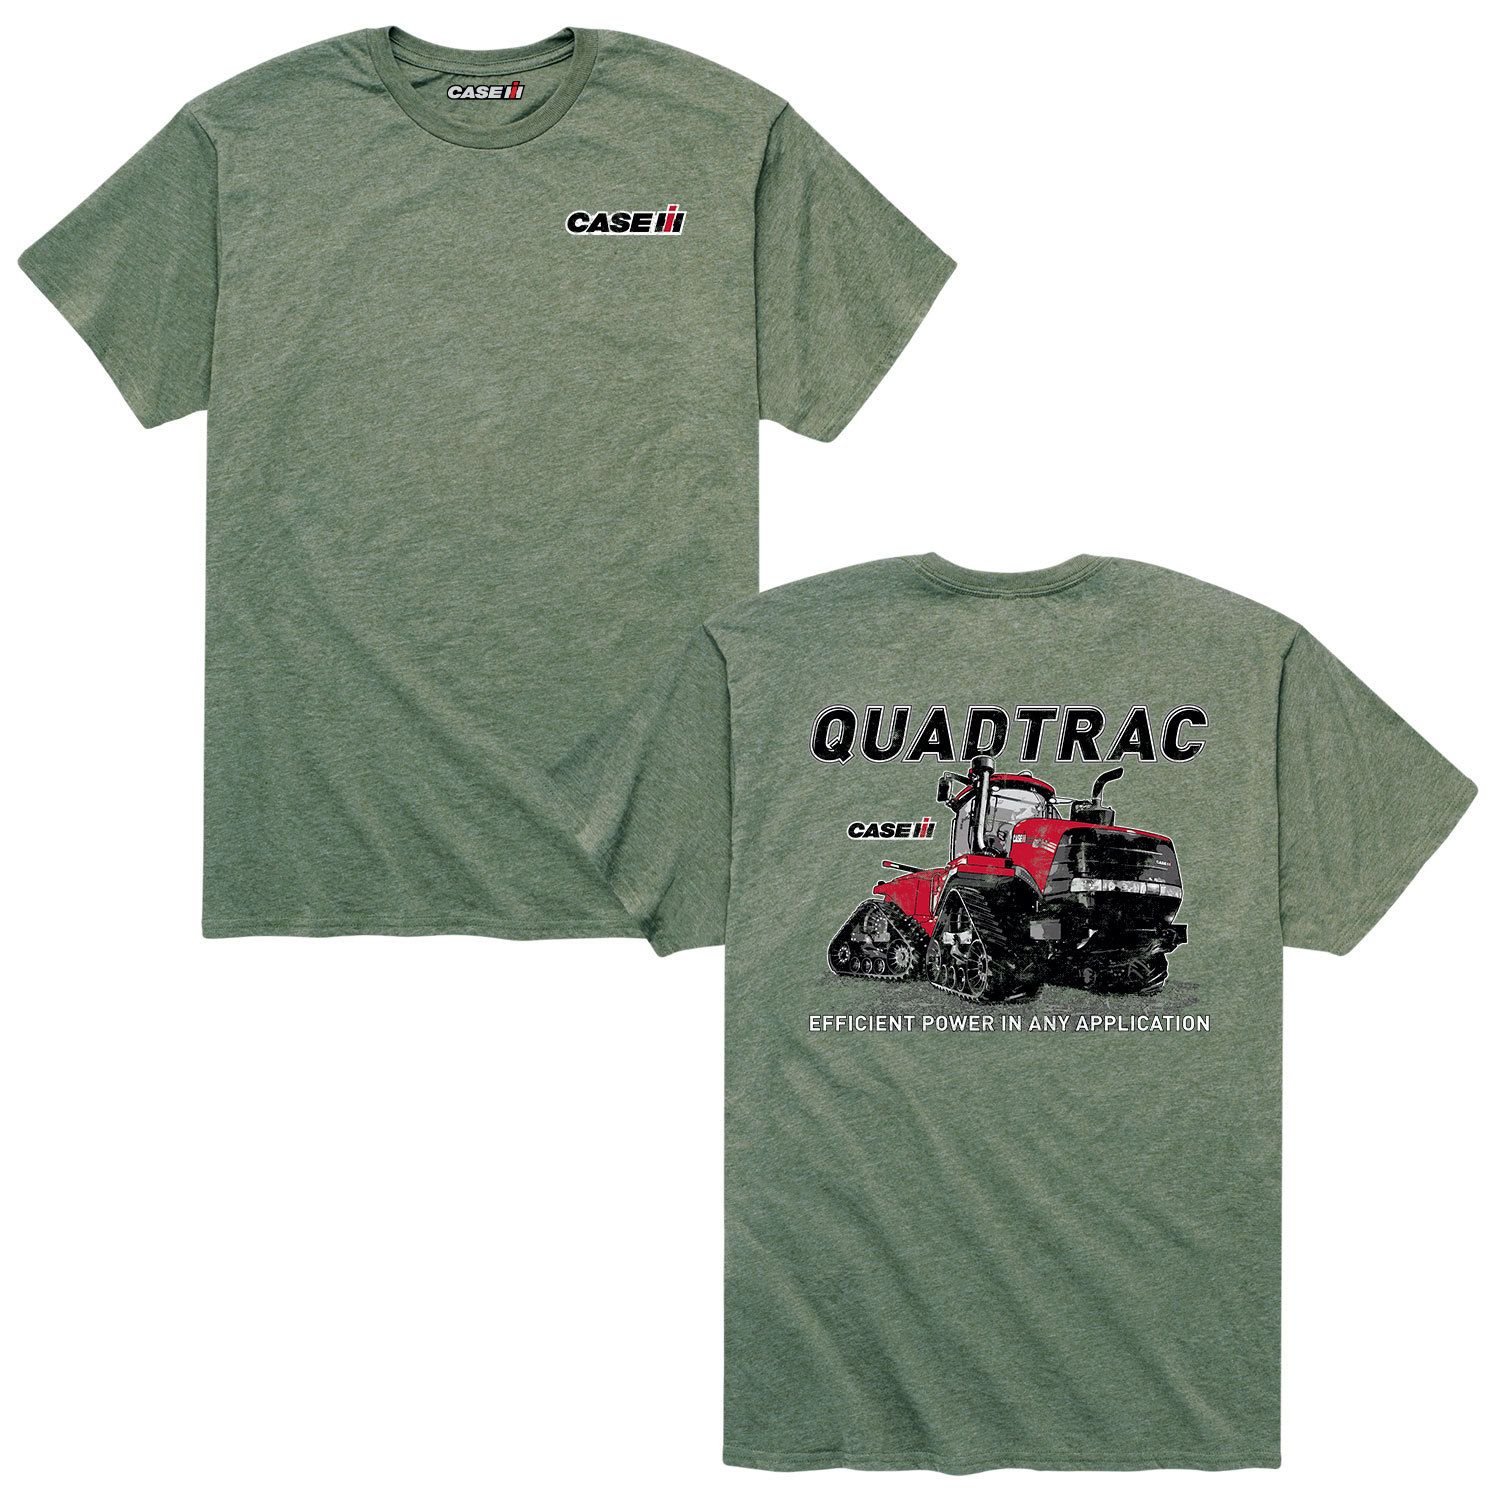 Мужская футболка Case IH Quadtrac Licensed Character цена и фото